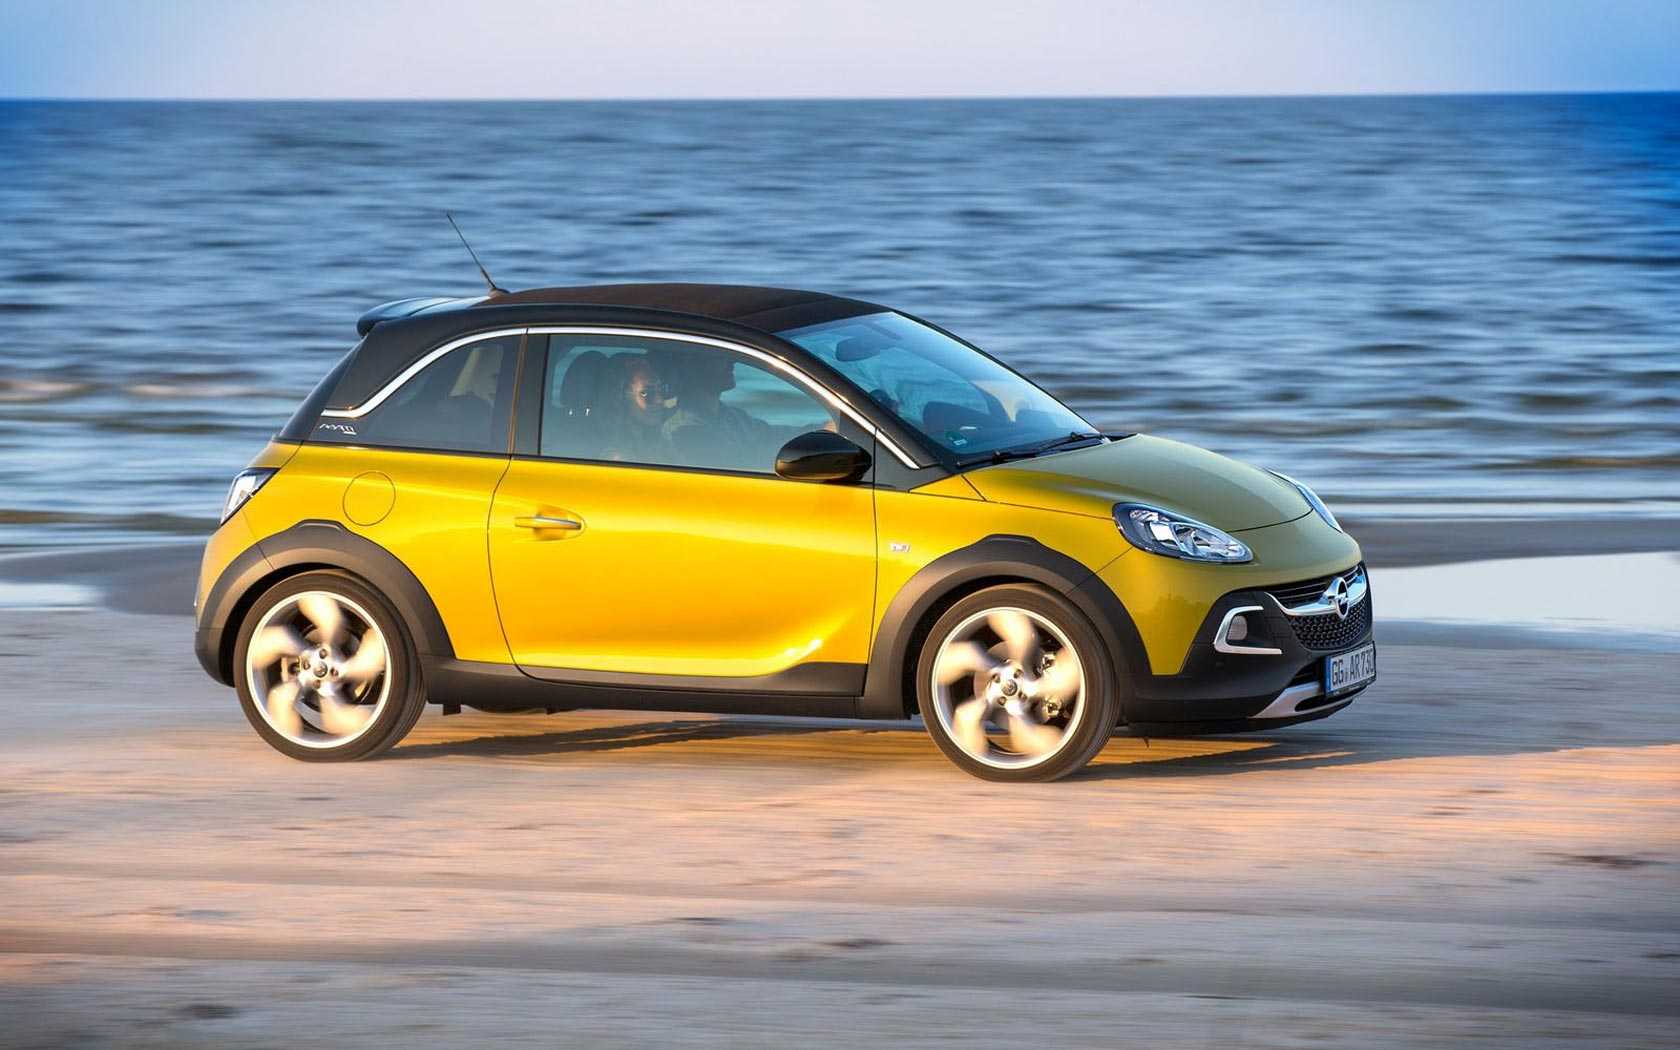 Технические характеристики Opel Adam Rocks размеры, двигатели, а так же стоимость в РФ Обзор Опель Адам Рокс с фото интерьера и экстерьера